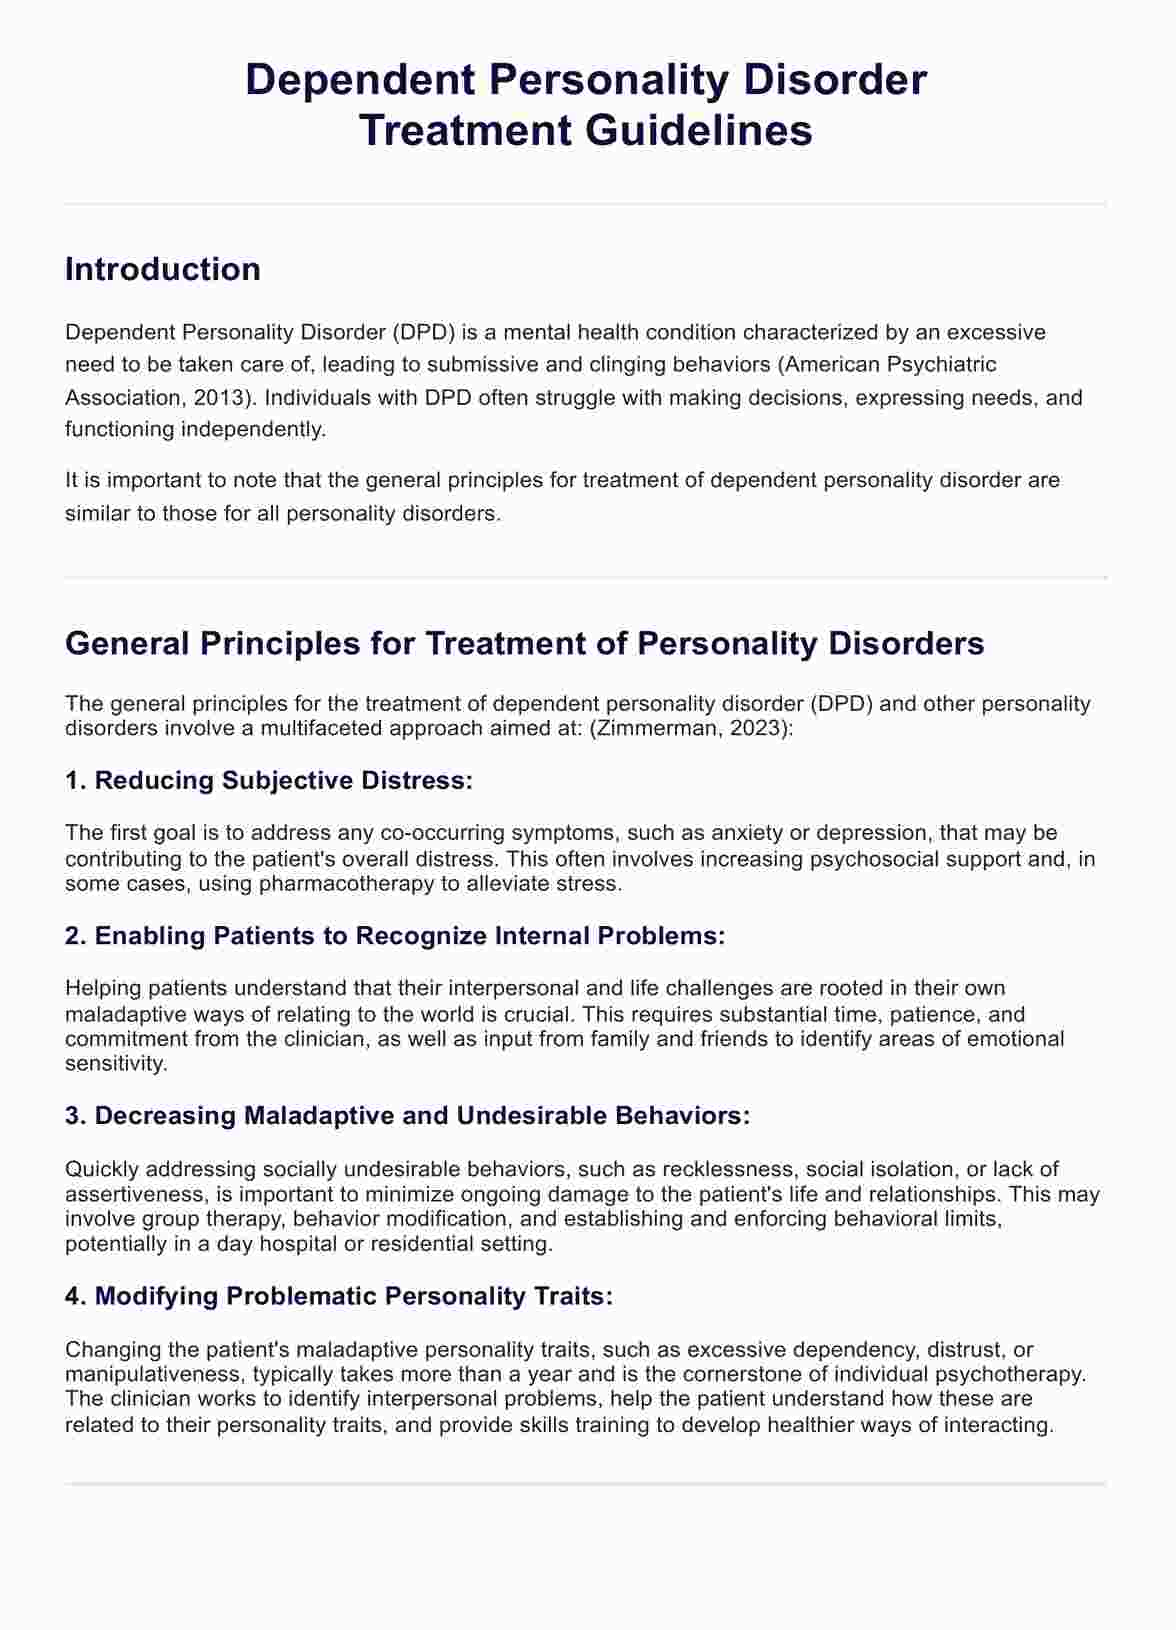 Tratamiento del Trastorno Dependiente de la Personalidad (TDP)  PDF Example